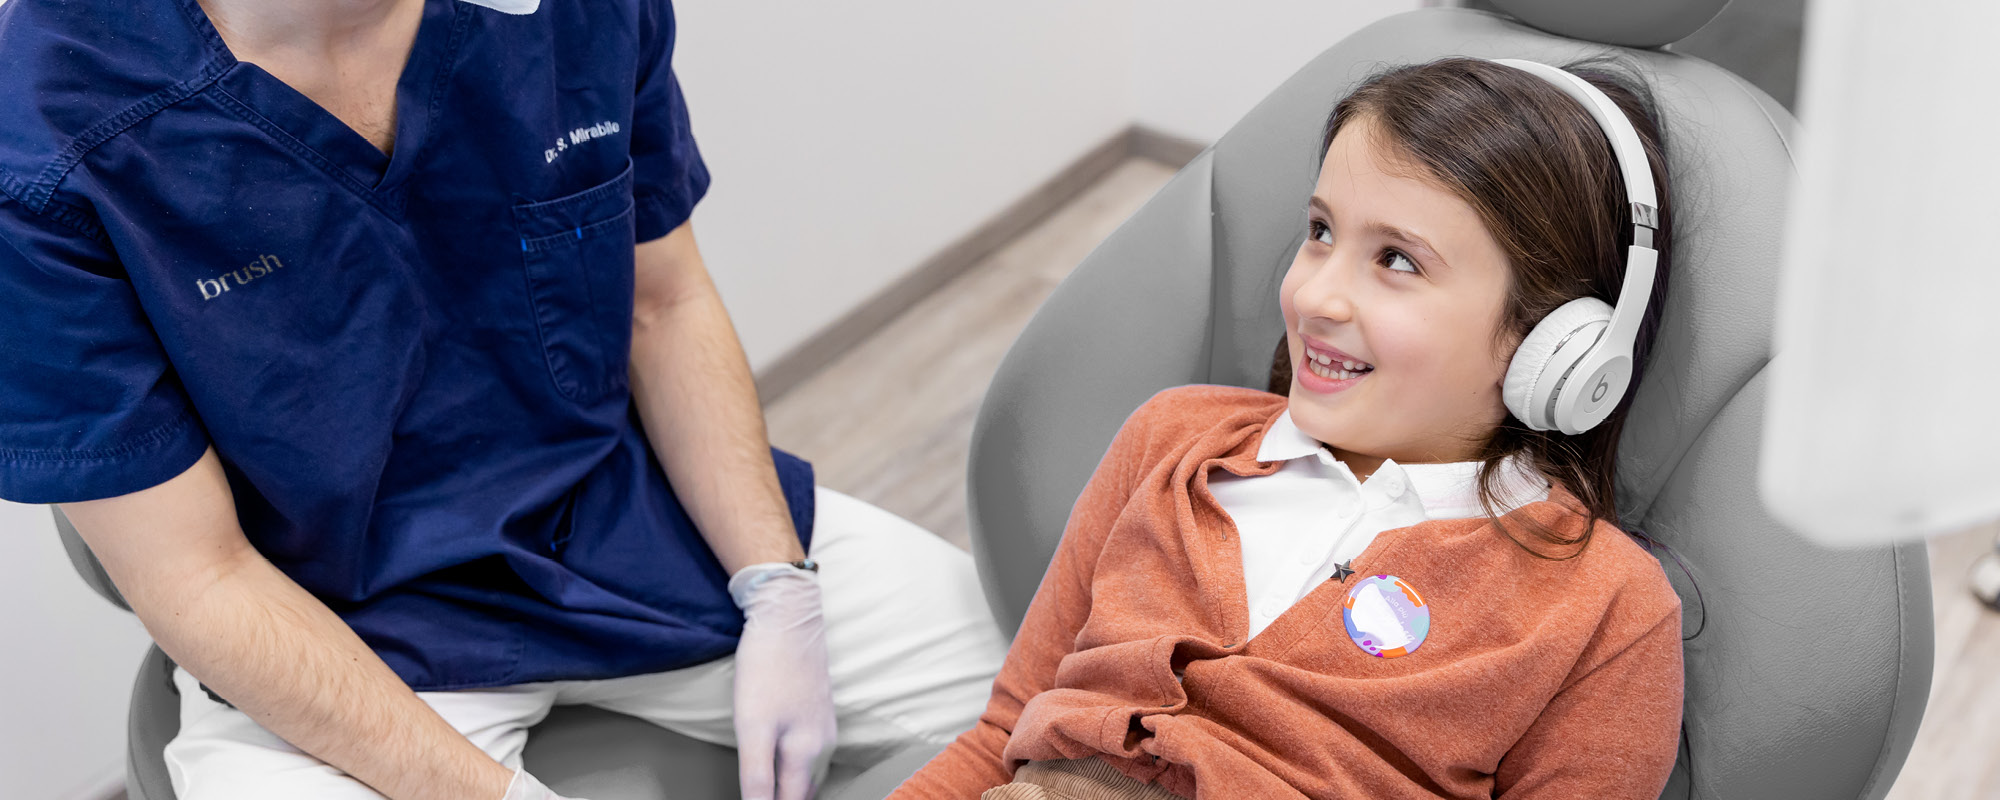 Ortodonzia trasparente per bambini negli studi Brush: caratteristiche, durata e vantaggi delle mascherine trasparenti Invisalign per bimbi!